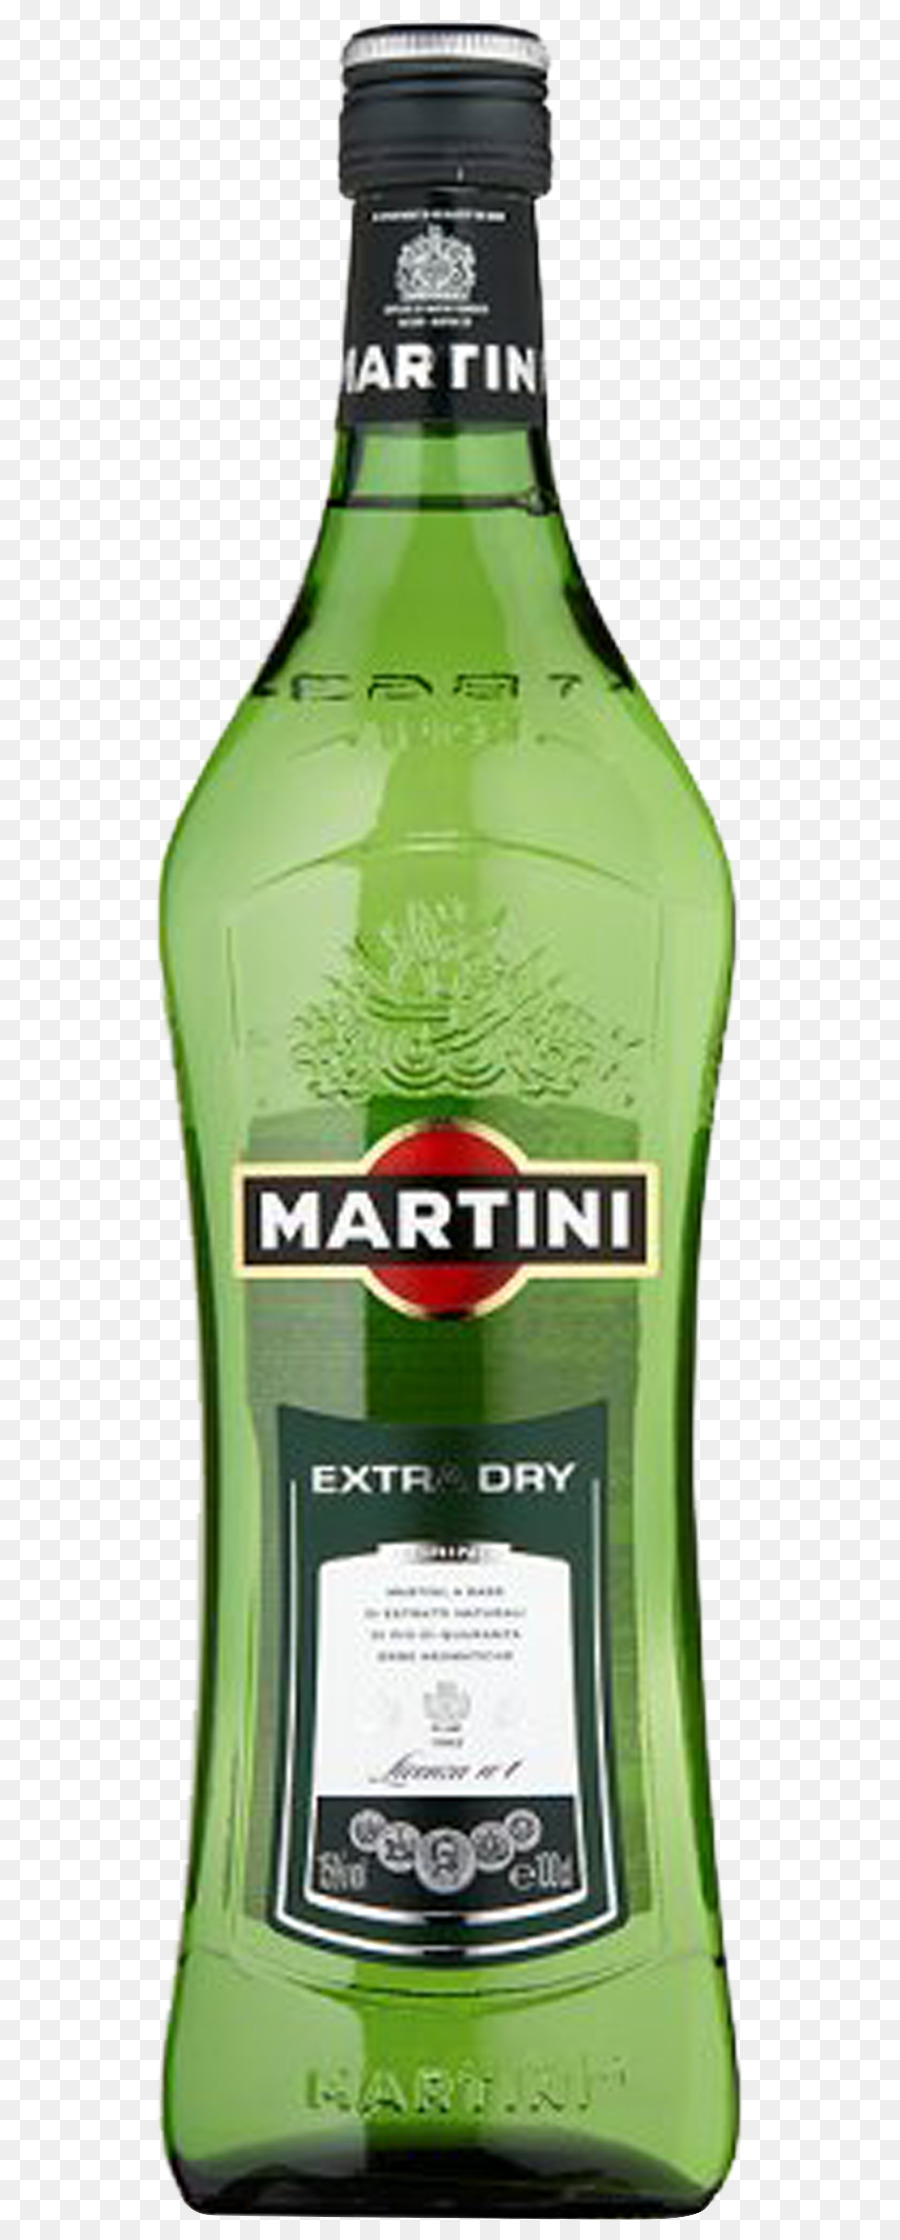 Martini Đình khai vị Cất đồ uống Rượu - Rượu